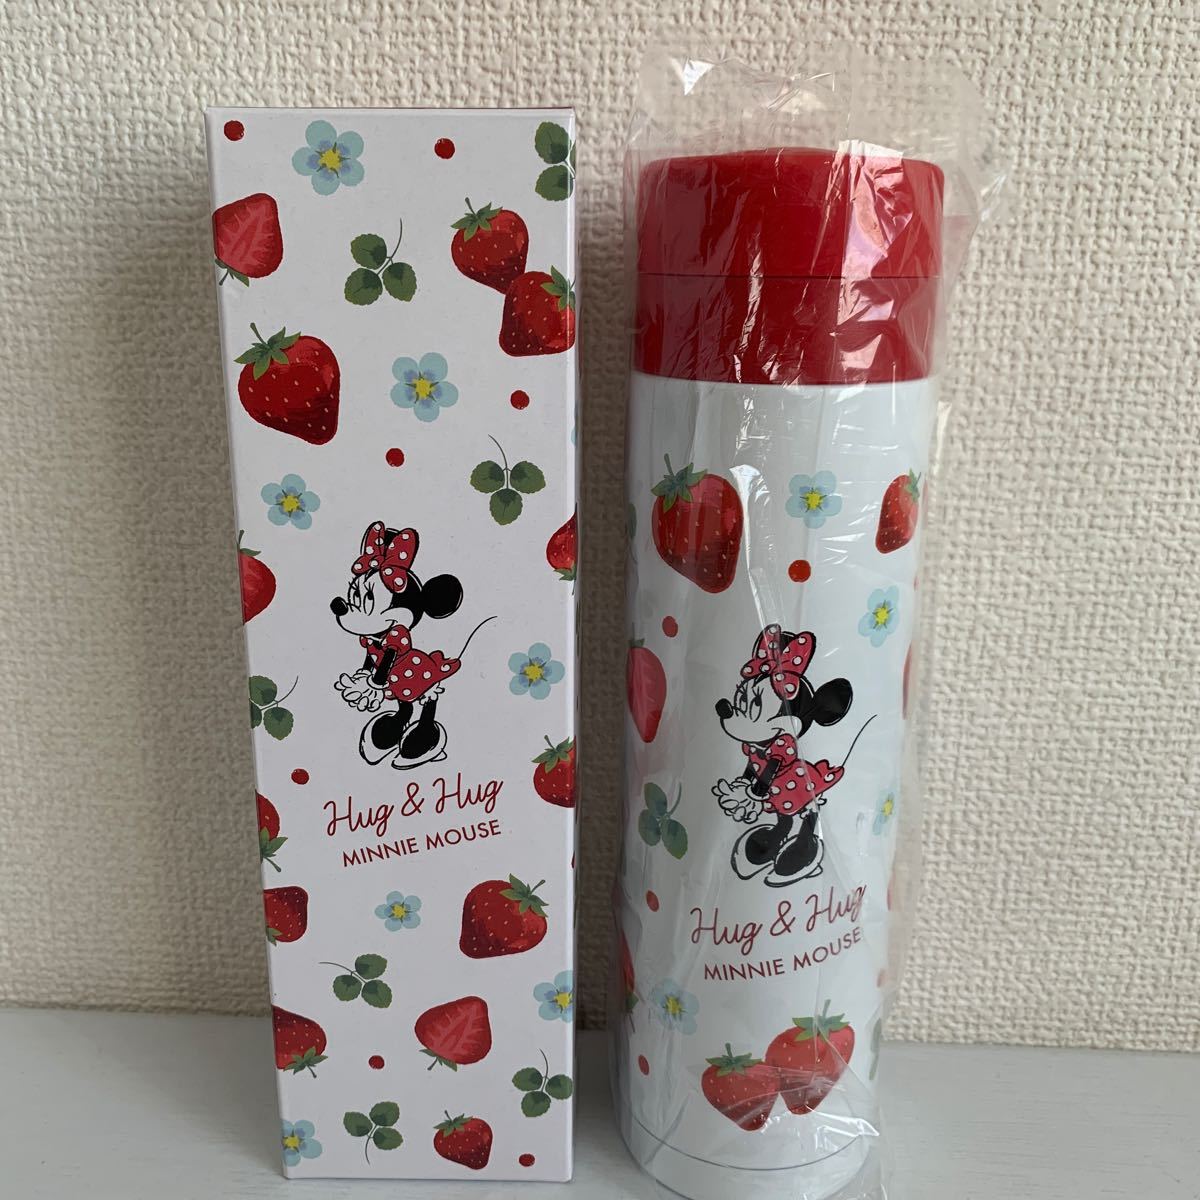 ディズニー ミニーちゃん ステンレスボトル 300ml 水筒 いちご ストロベリー イチゴ 苺 strawberry